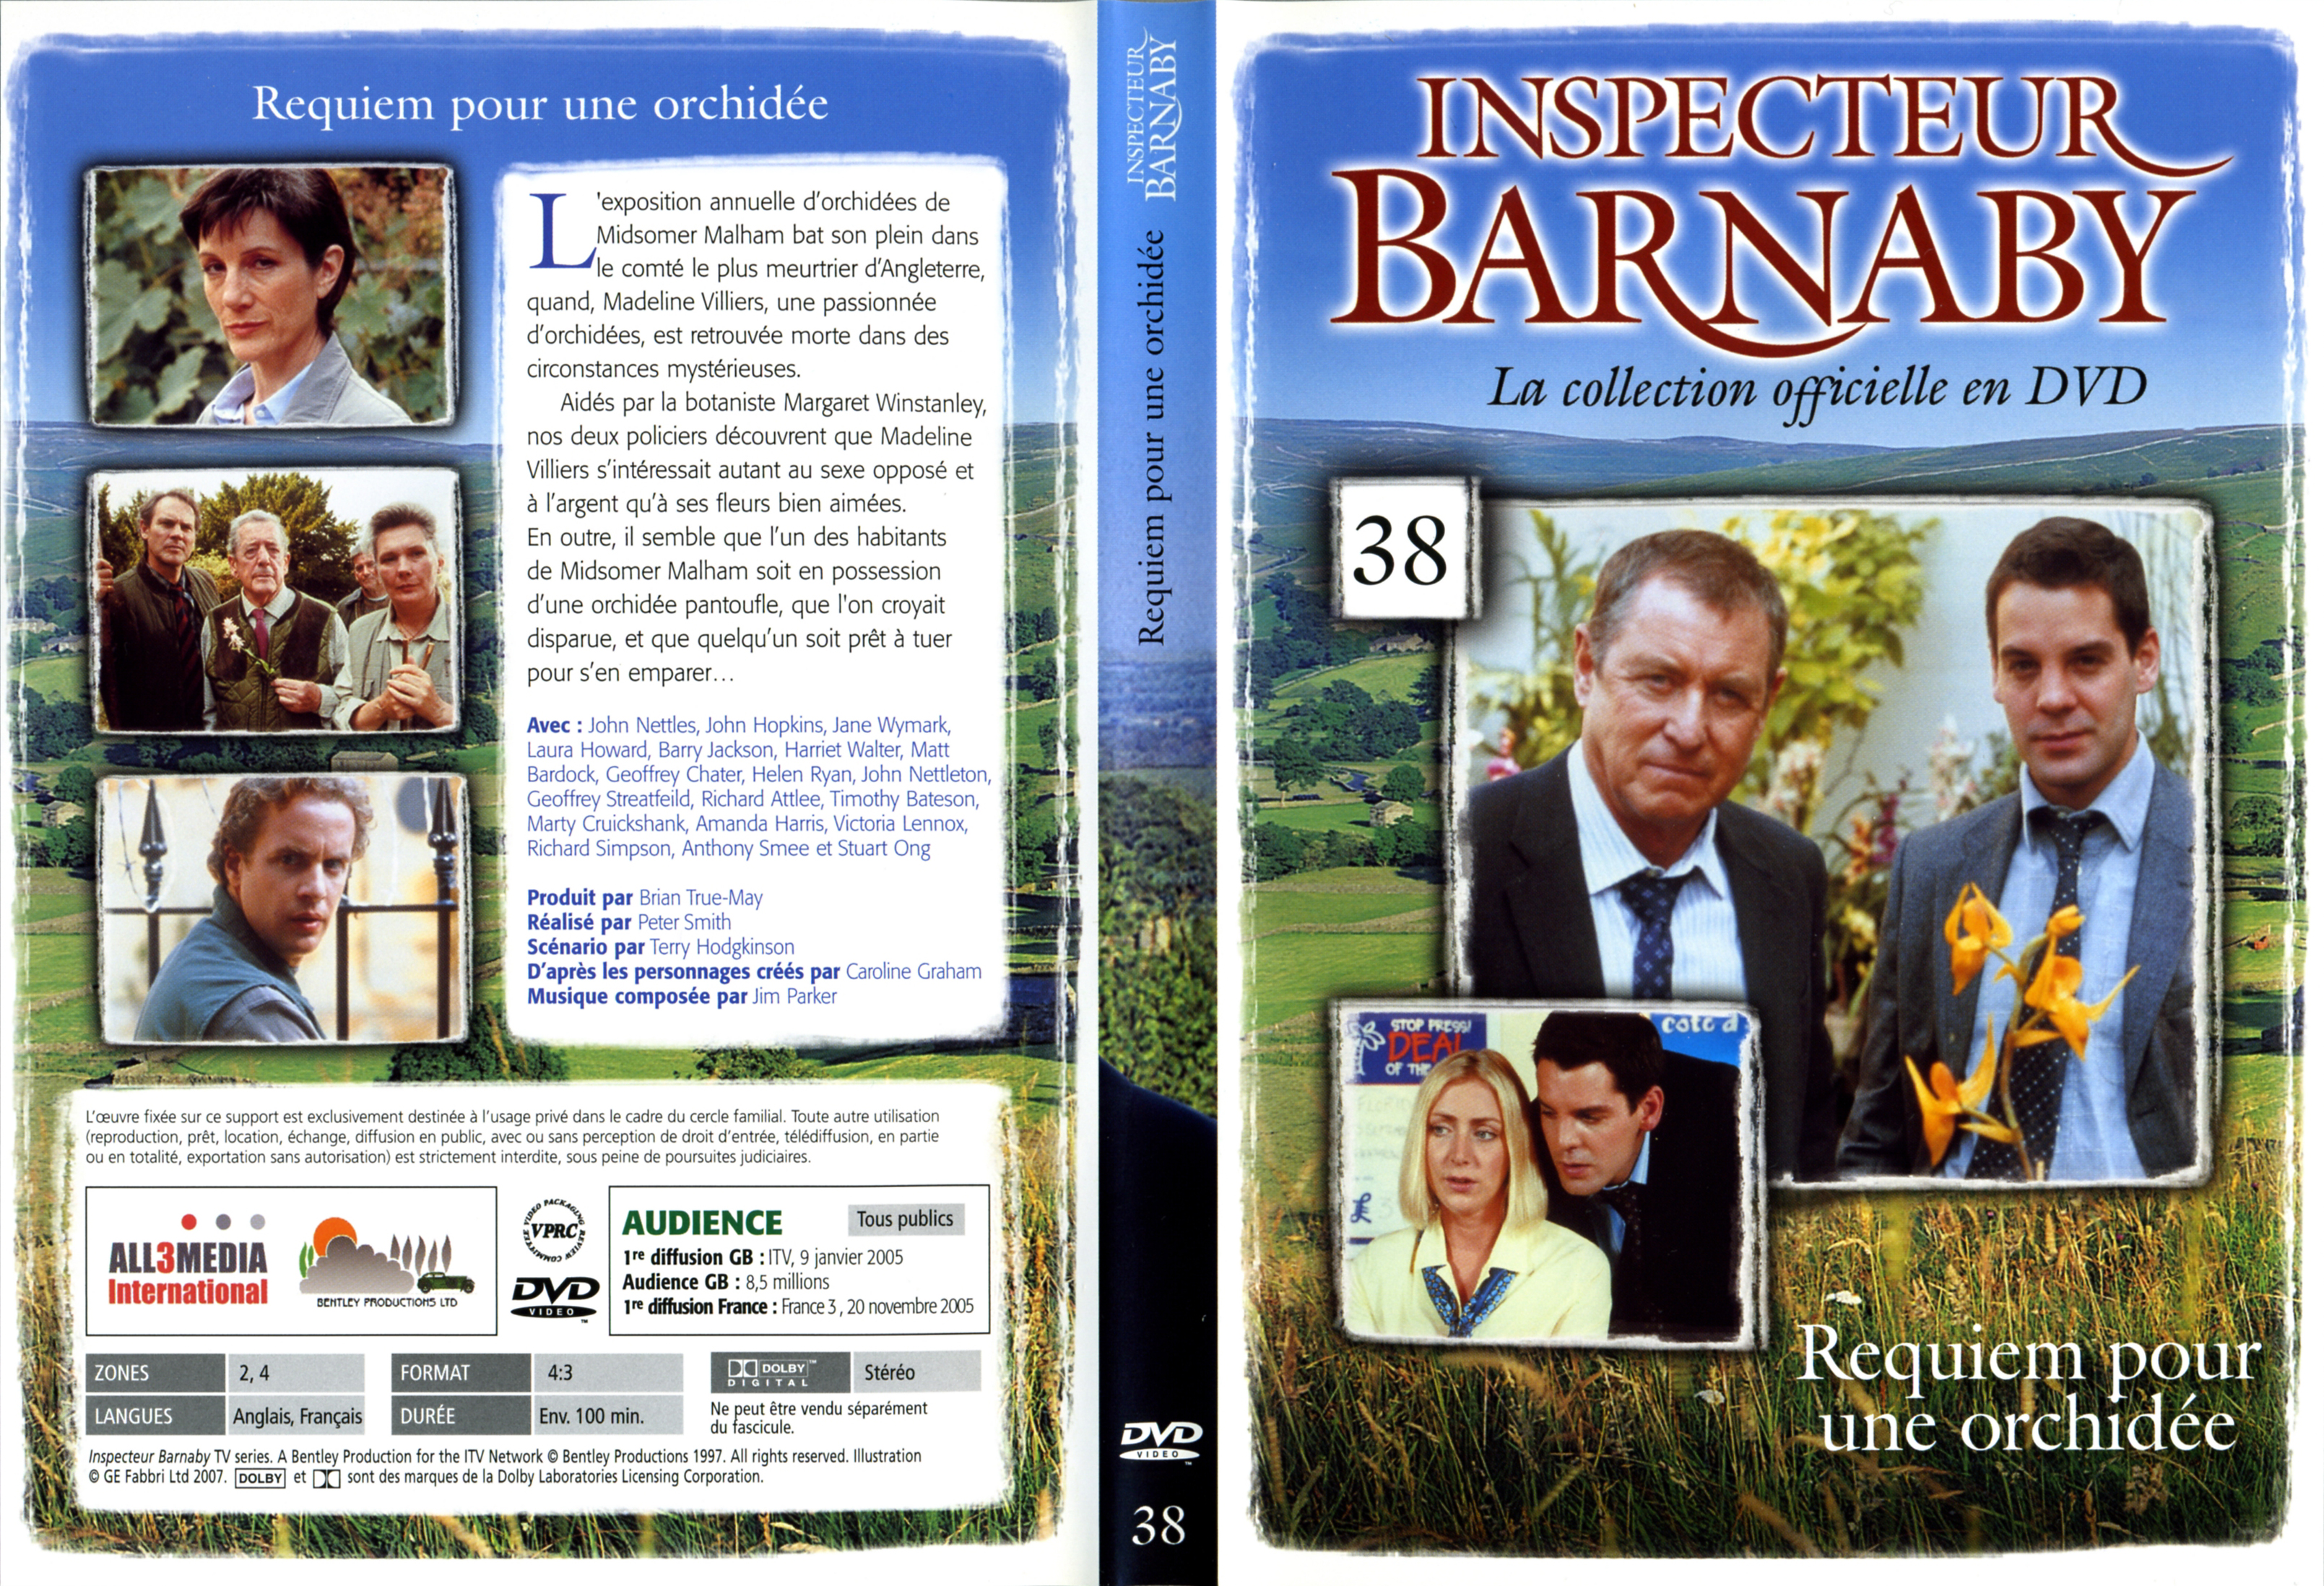 Jaquette DVD Barnaby vol 38 - Requiem pour une orchide